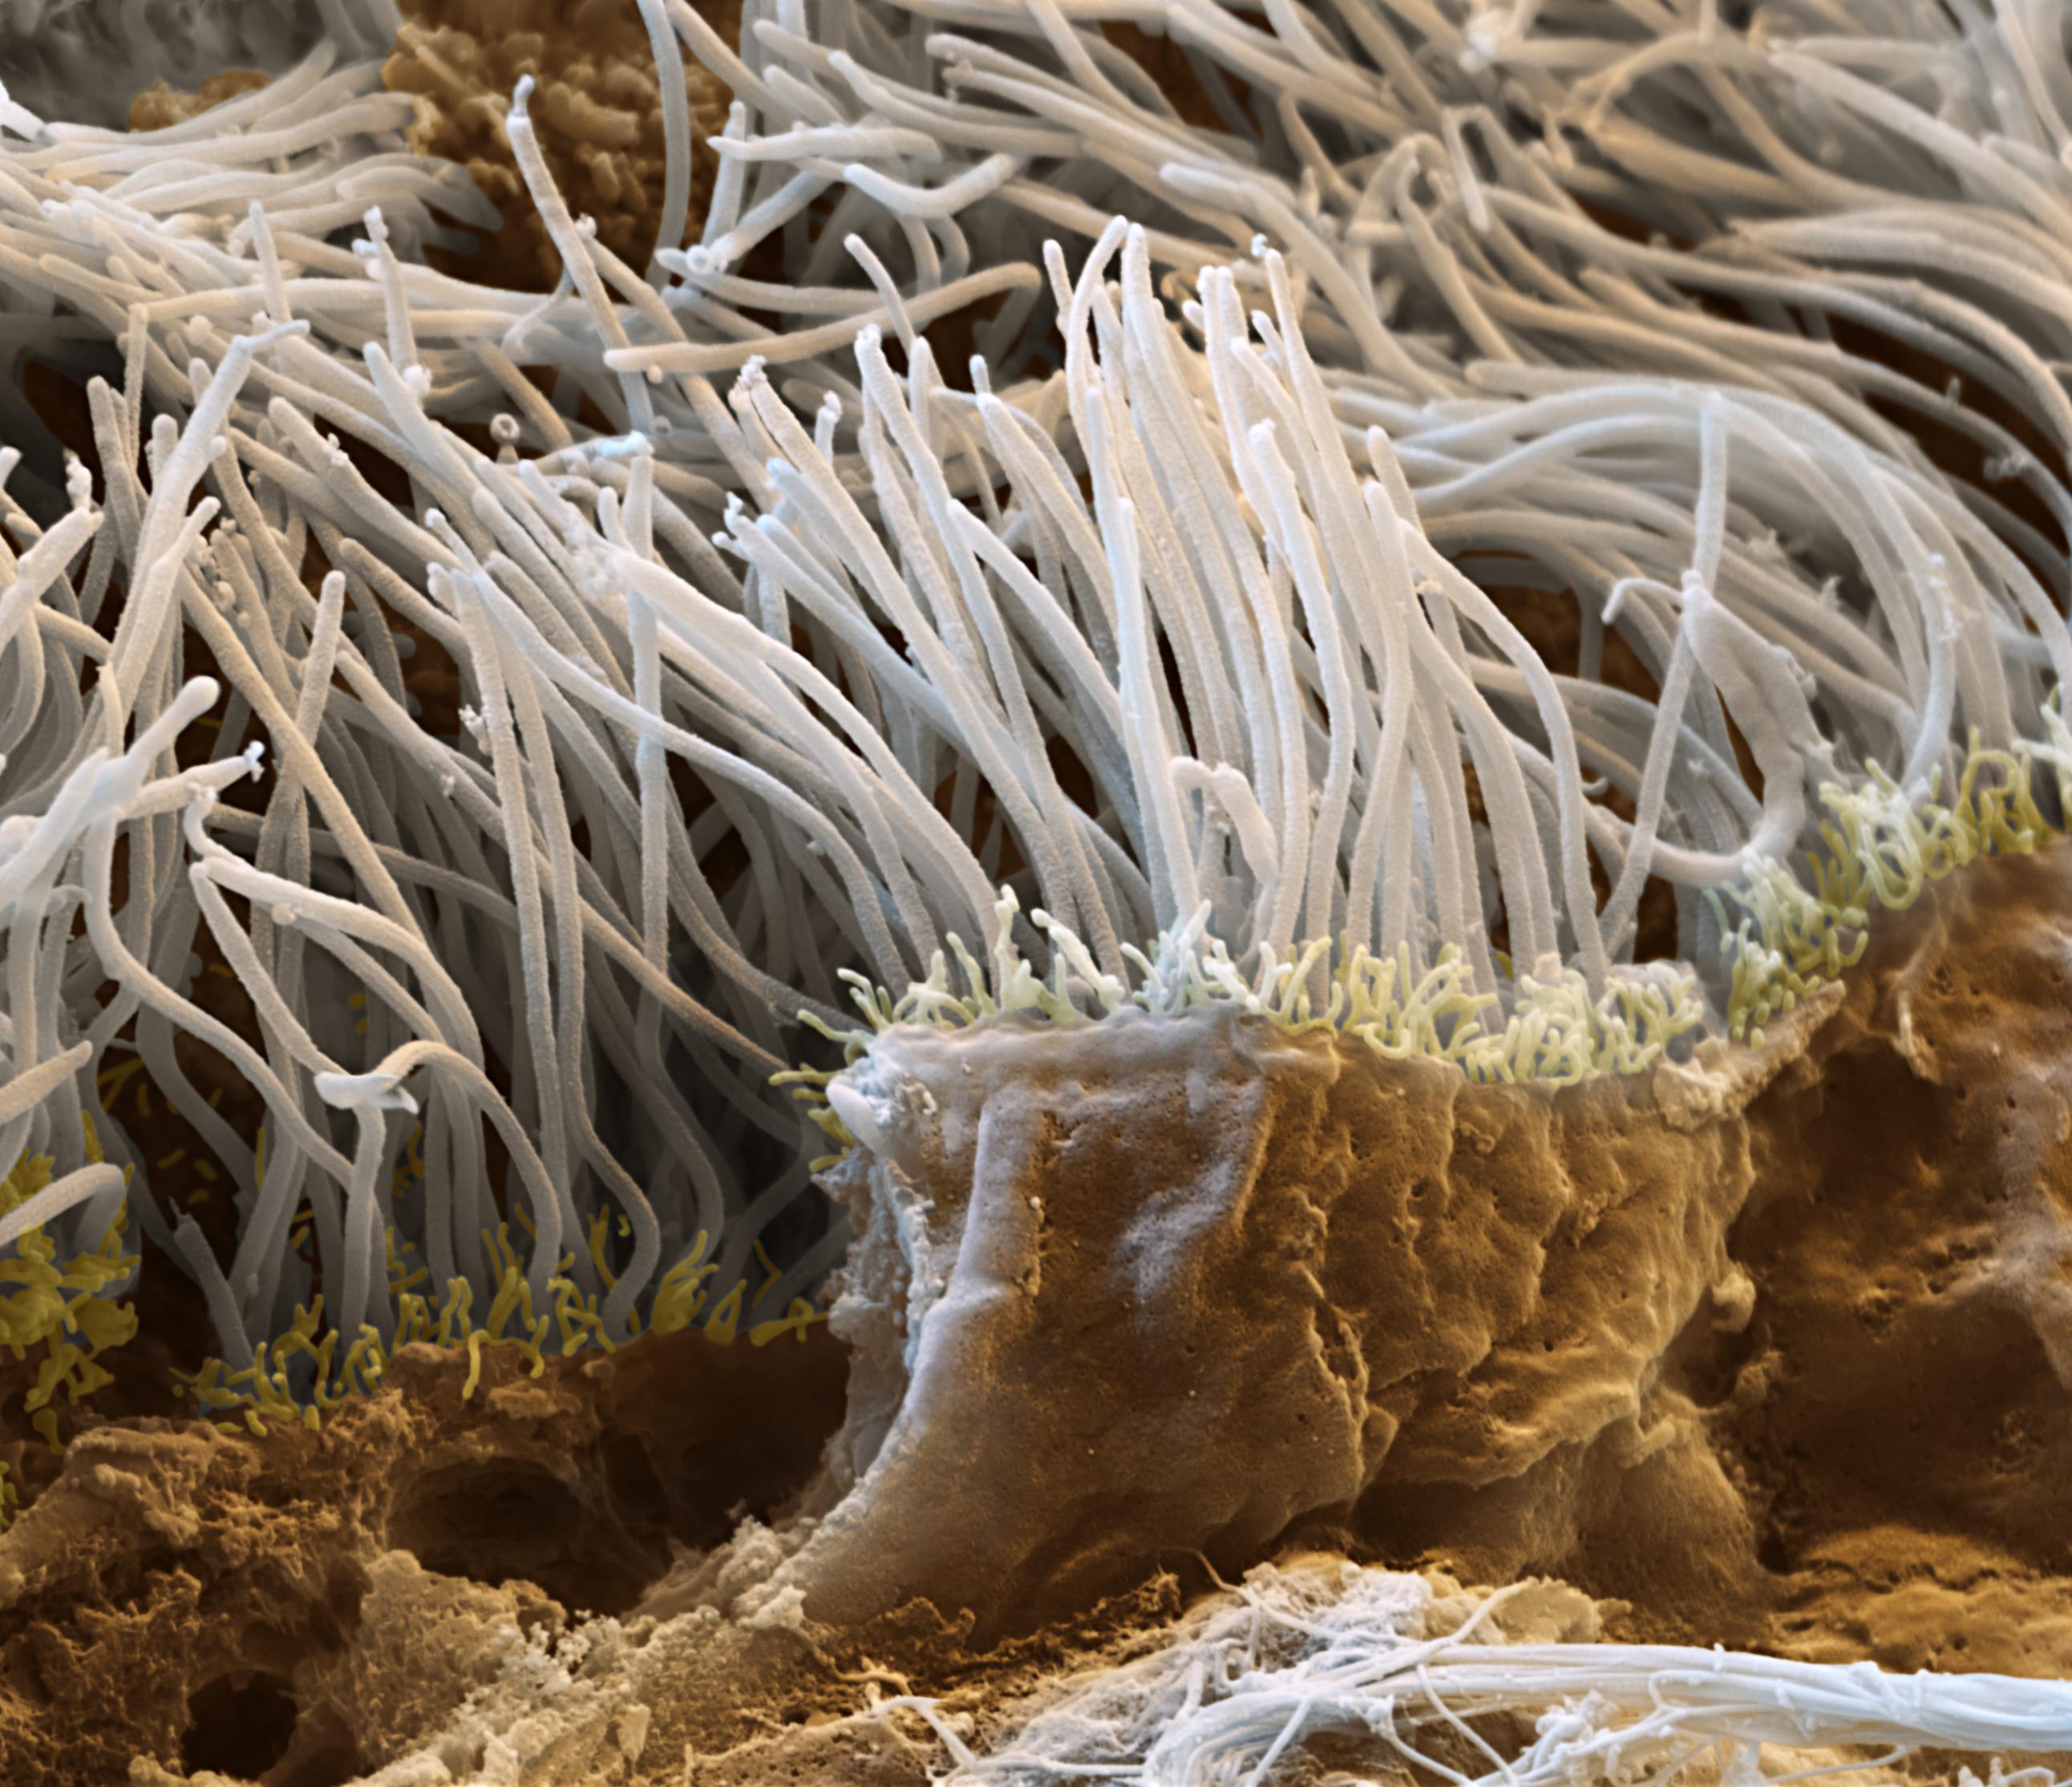 Das Bild zeigt einen Bruch durch das Gewebe der Flimmerepithelien der Lunge (Tunica mucosa). Diese Flimmerepithelien kleiden die gesamten Bronchien der Lunge aus. Die Cilien dieser Zellen schlagen ständig in Richtung der Luftröhre und transportieren eingeatmete Schmutzpartikel, zusammen mit abgesondertem Schleim, aus der Lunge heraus (Probe: Schwein). Raster-Elektronenmikroskop, Vergrößerung 12 000:1 (bei 15×13cm Bildgrösse)